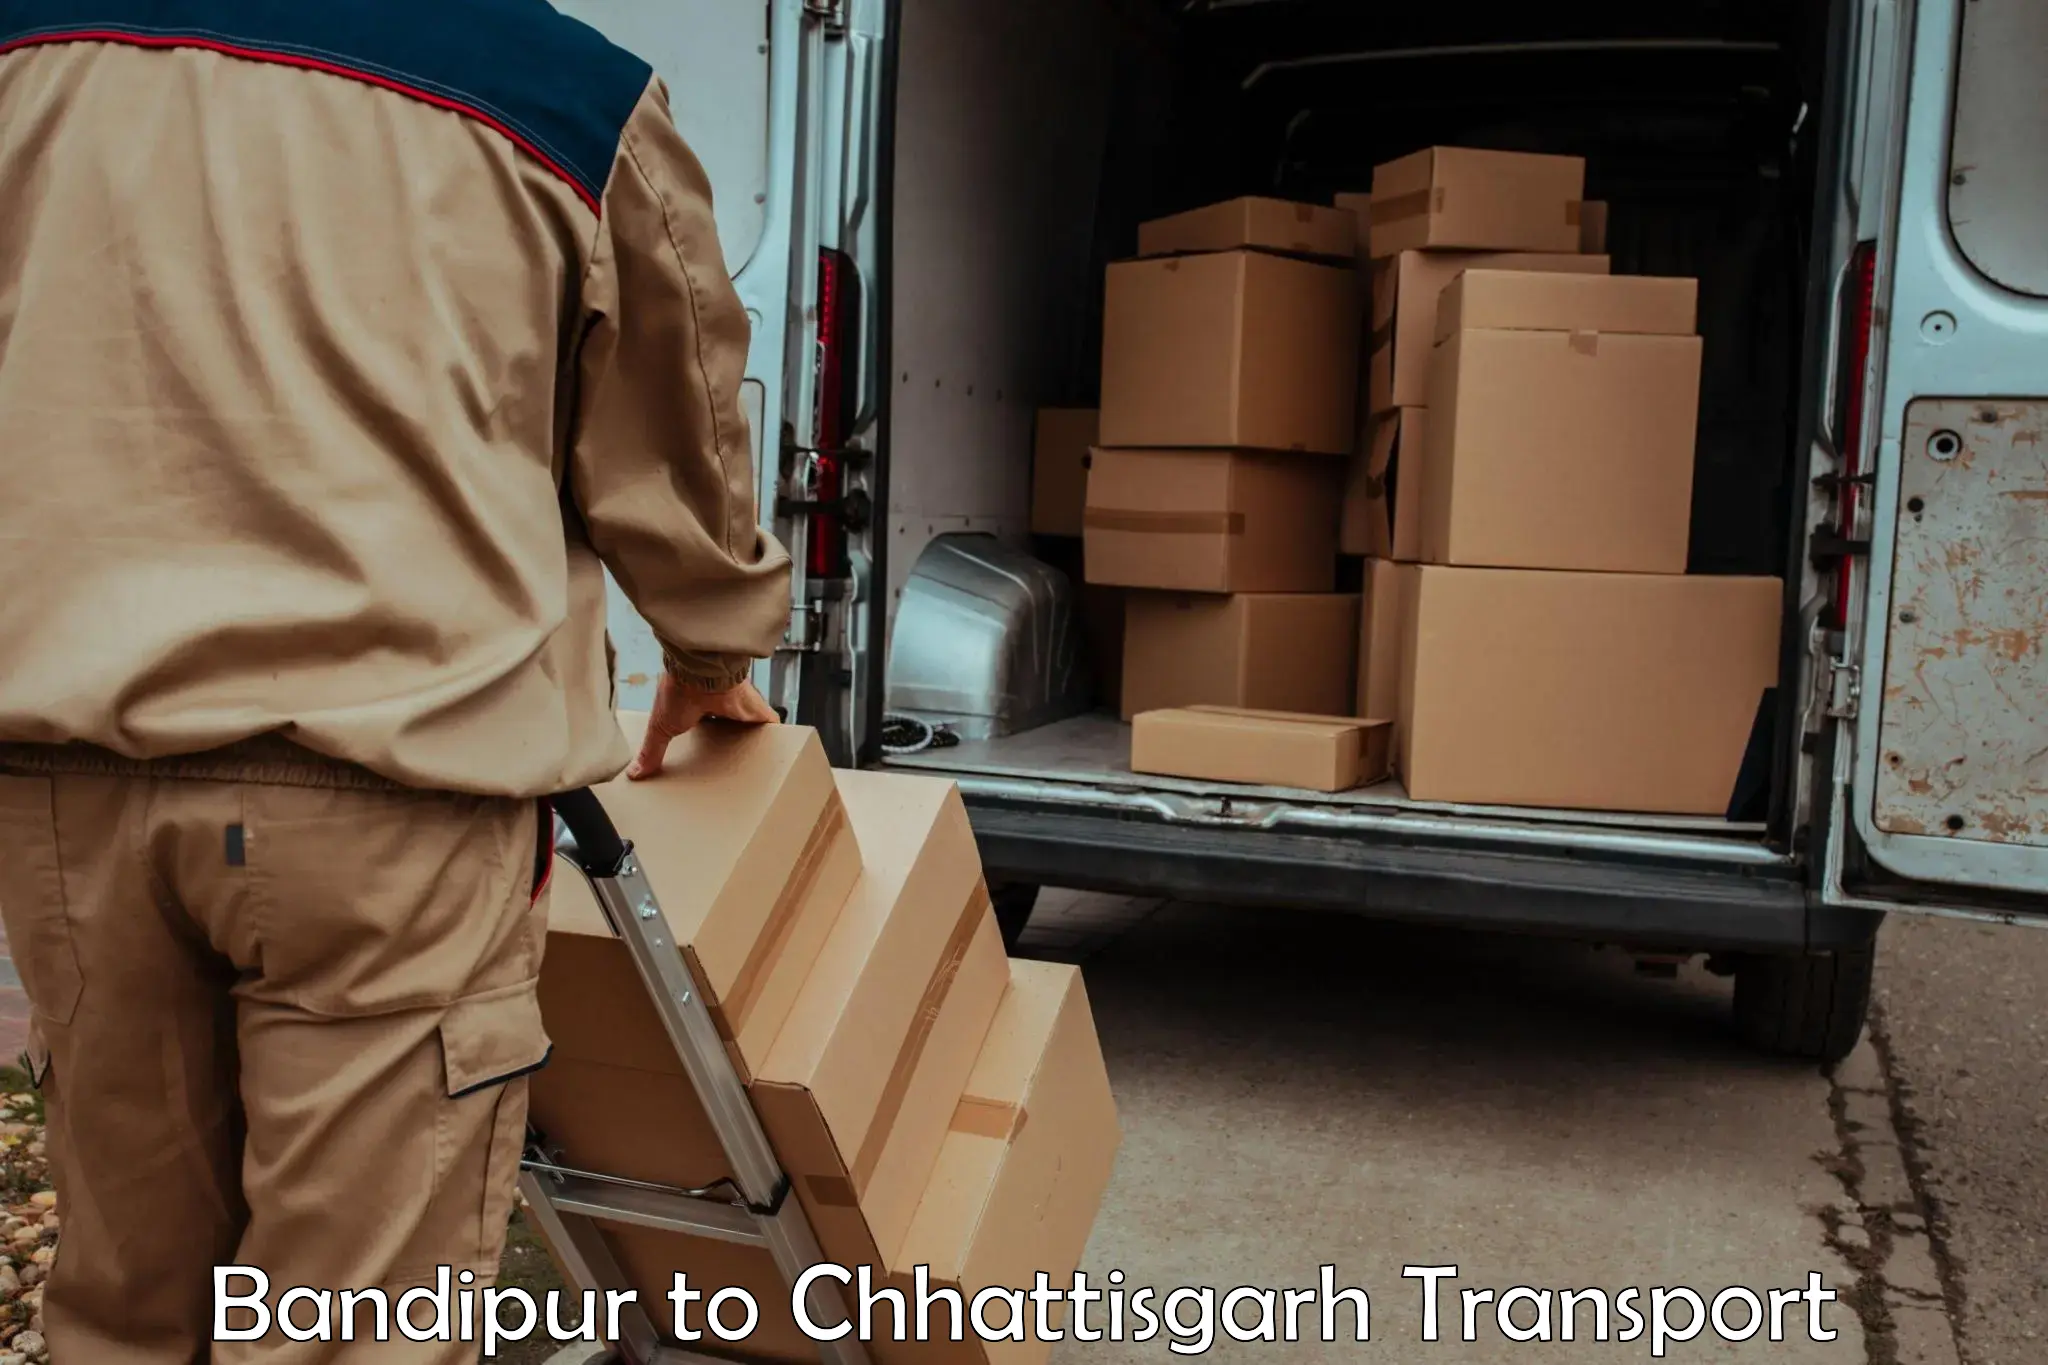 Daily parcel service transport Bandipur to Premnagar